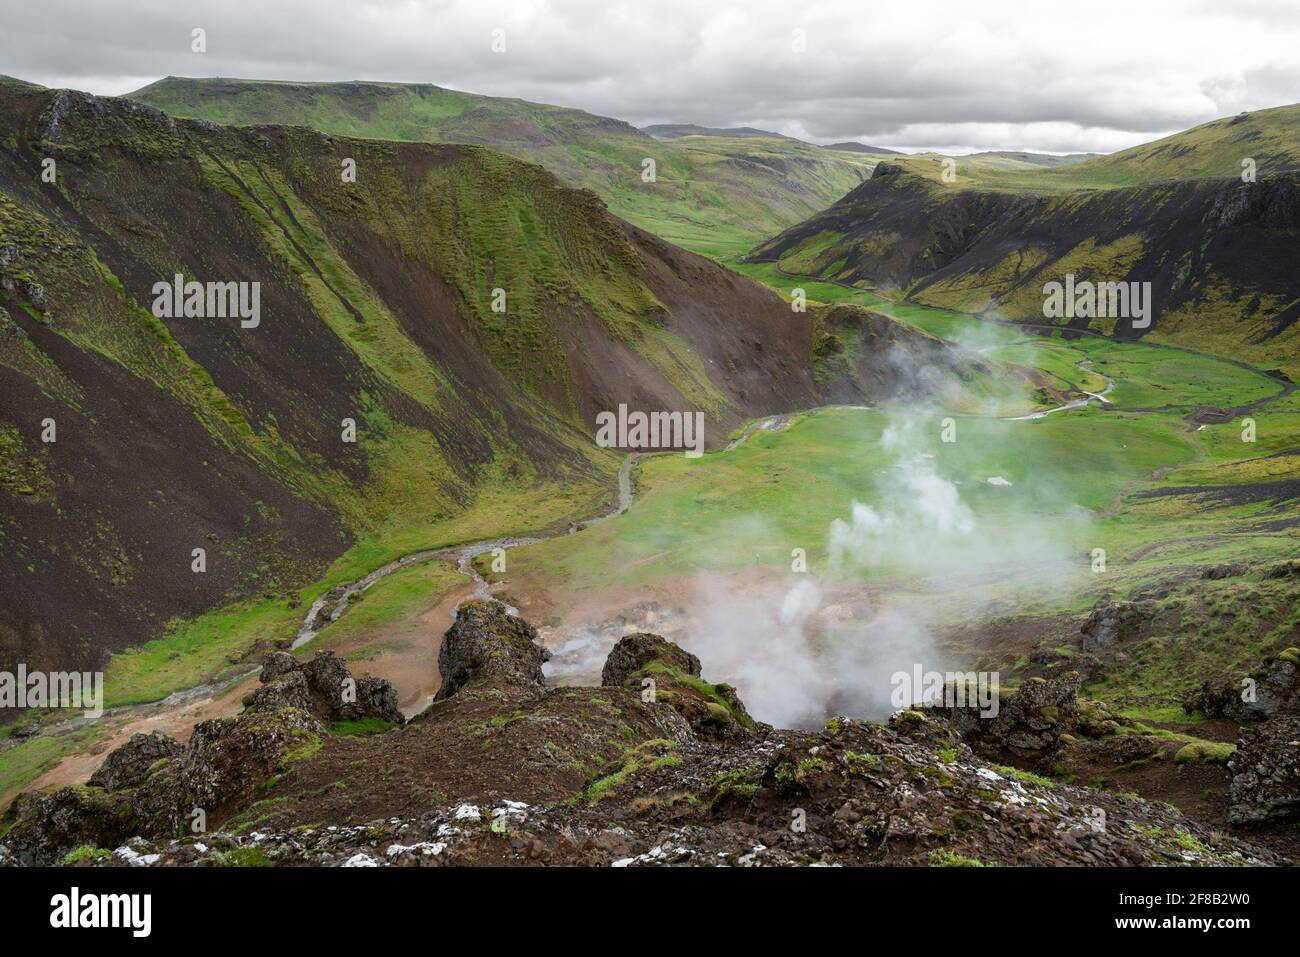 Dampfrauch steigt aus kochendem Schlamm in einem braunen und grünen Tal des Geysir Geothermal Area, Island. Die heißen Quellen am Golden Circle halten an. Stockfoto